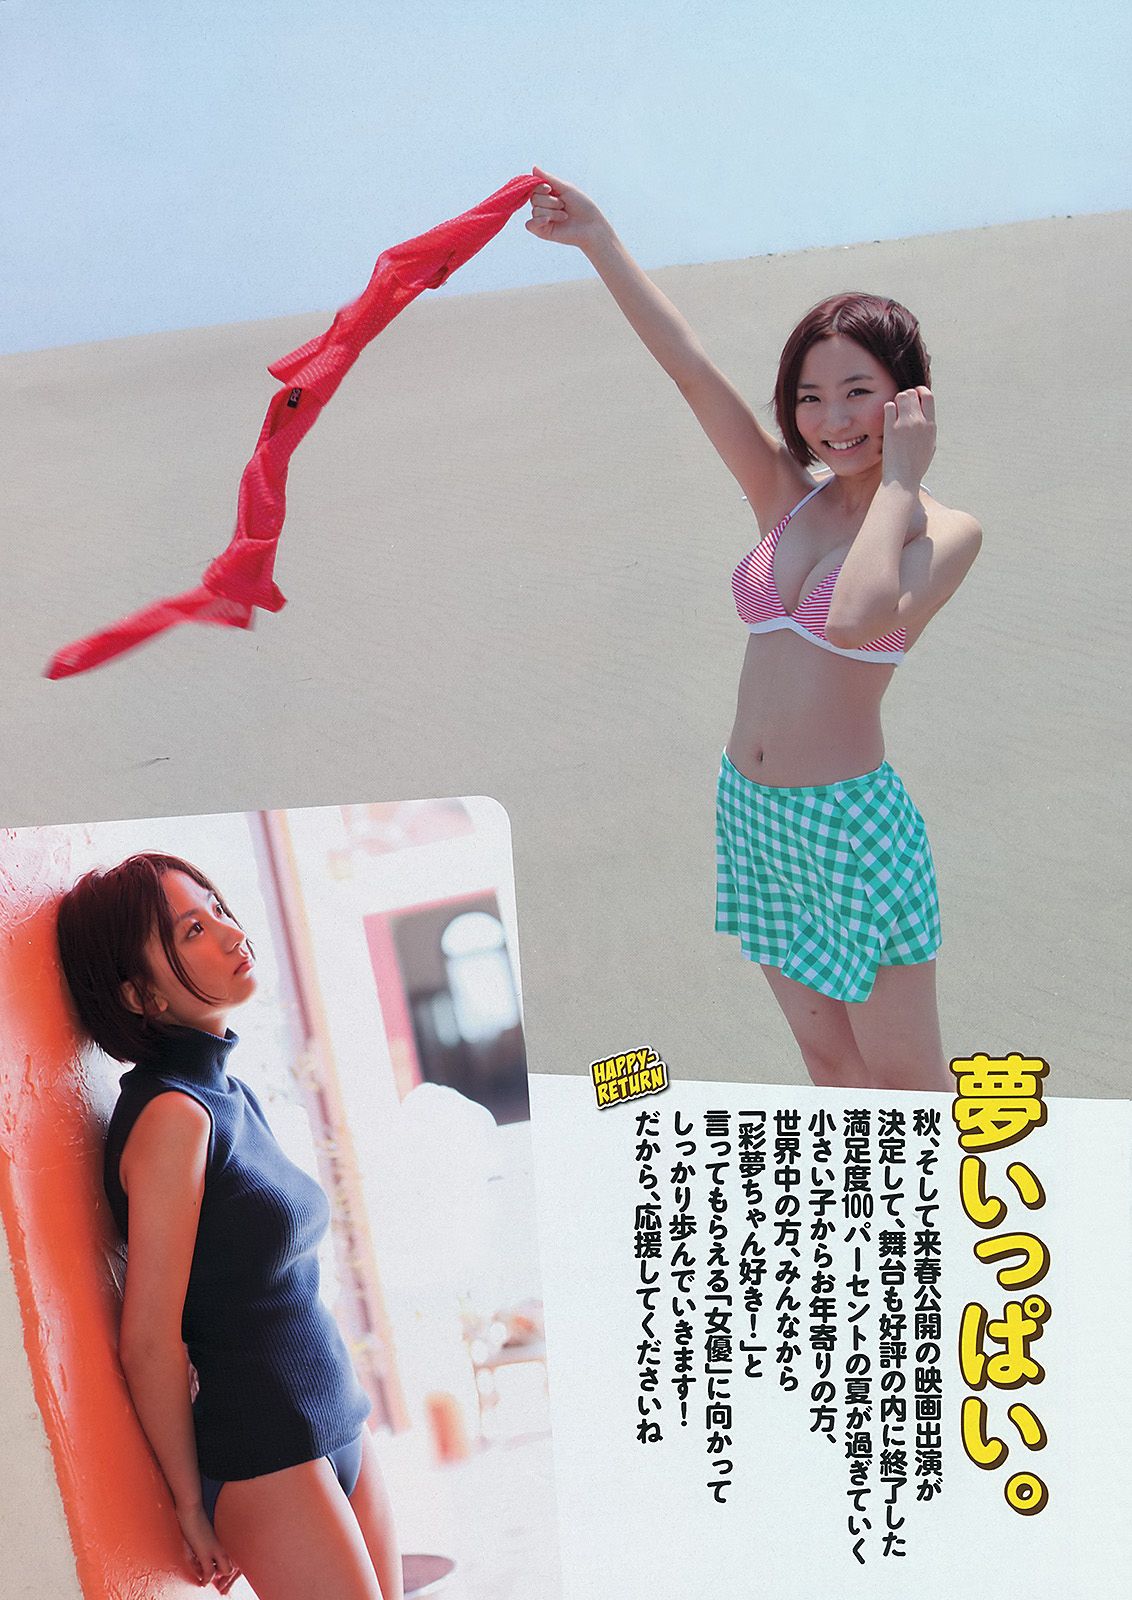 AKB48 Atsuko Maeda Riria Riria Sayaka Okada [Wöchentlicher Playboy] 2012 Nr. 36 Foto Seite 45 No.c4886c